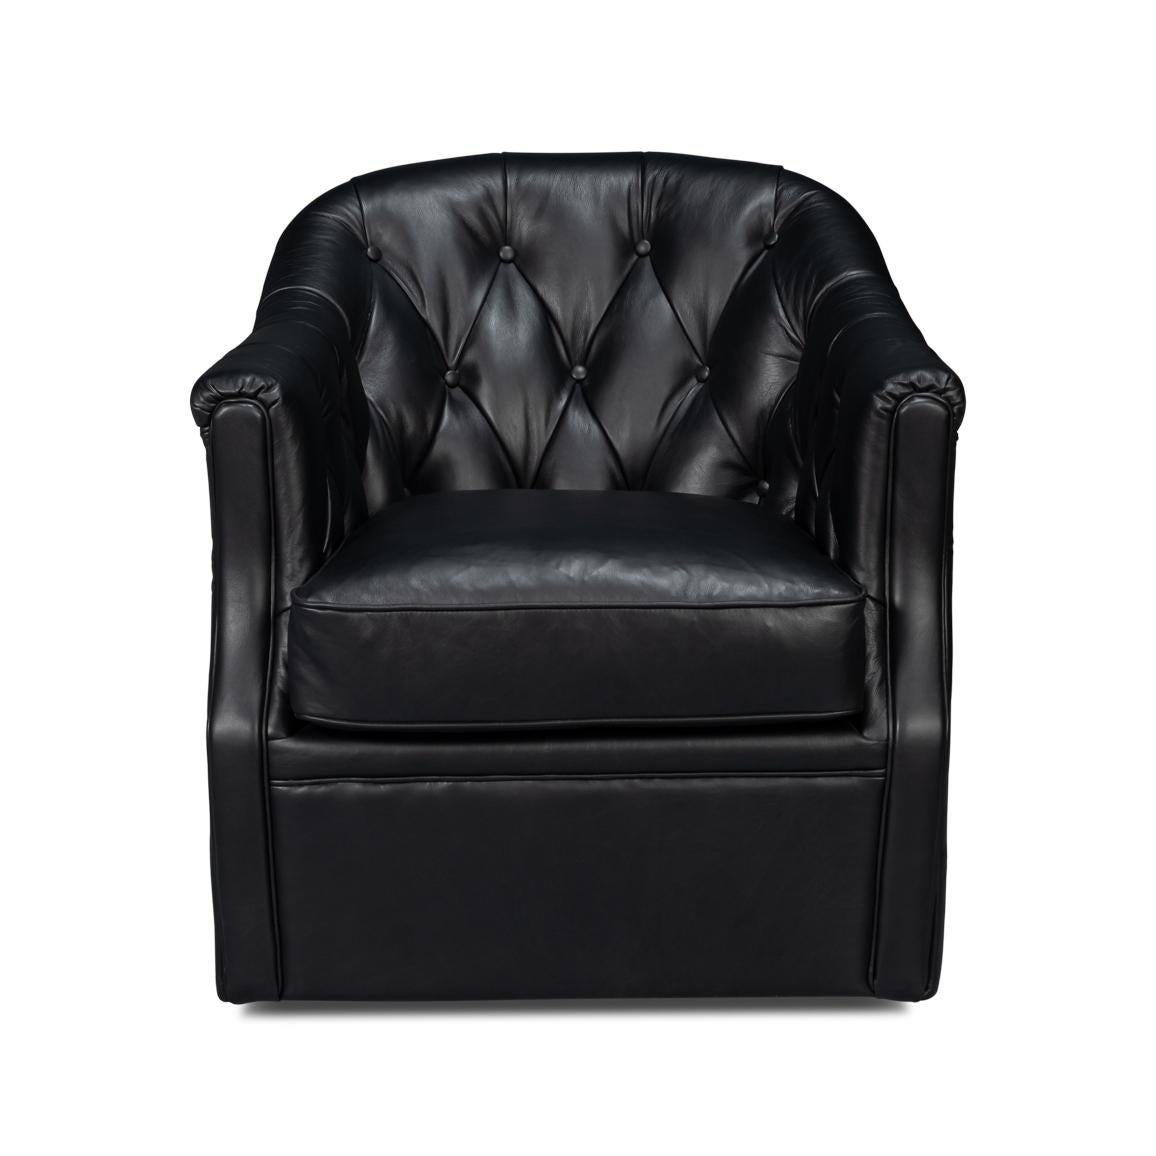 Ein klassischer ledergepolsterter Sessel mit Wannenlehne. Aus schwarzem Onyx-Leder, mit getufteter Rückenlehne und gepolstertem Sitz, auf einem drehbaren Fuß.
Abmessungen: 30